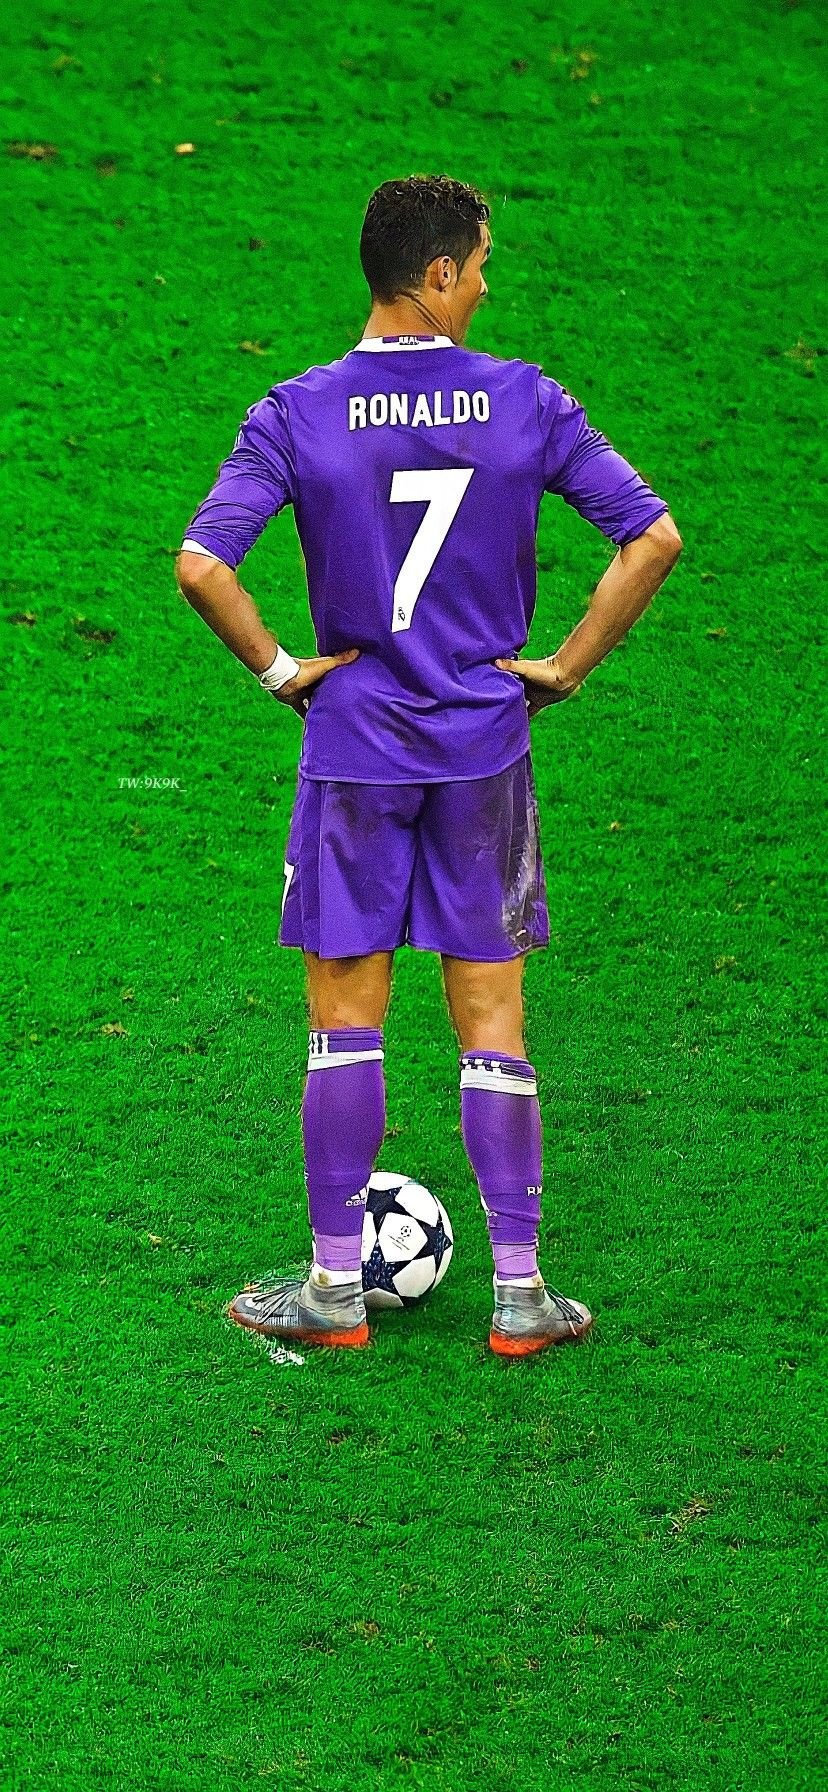 Cristiano Ronaldo Android Wallpaper Hd